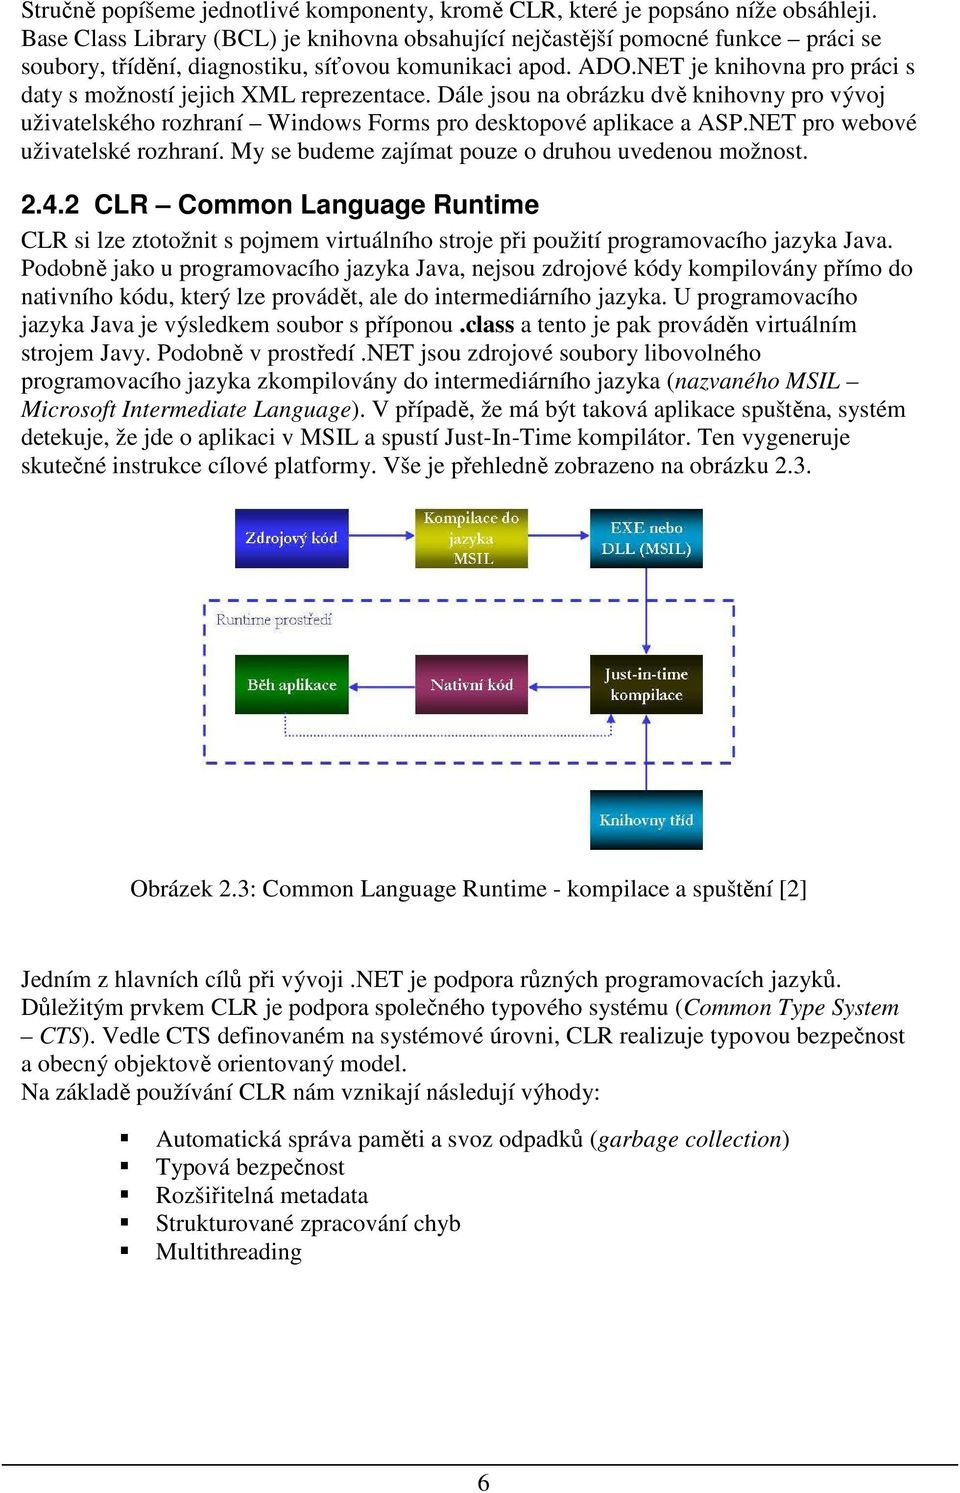 NET je knihovna pro práci s daty s možností jejich XML reprezentace. Dále jsou na obrázku dvě knihovny pro vývoj uživatelského rozhraní Windows Forms pro desktopové aplikace a ASP.